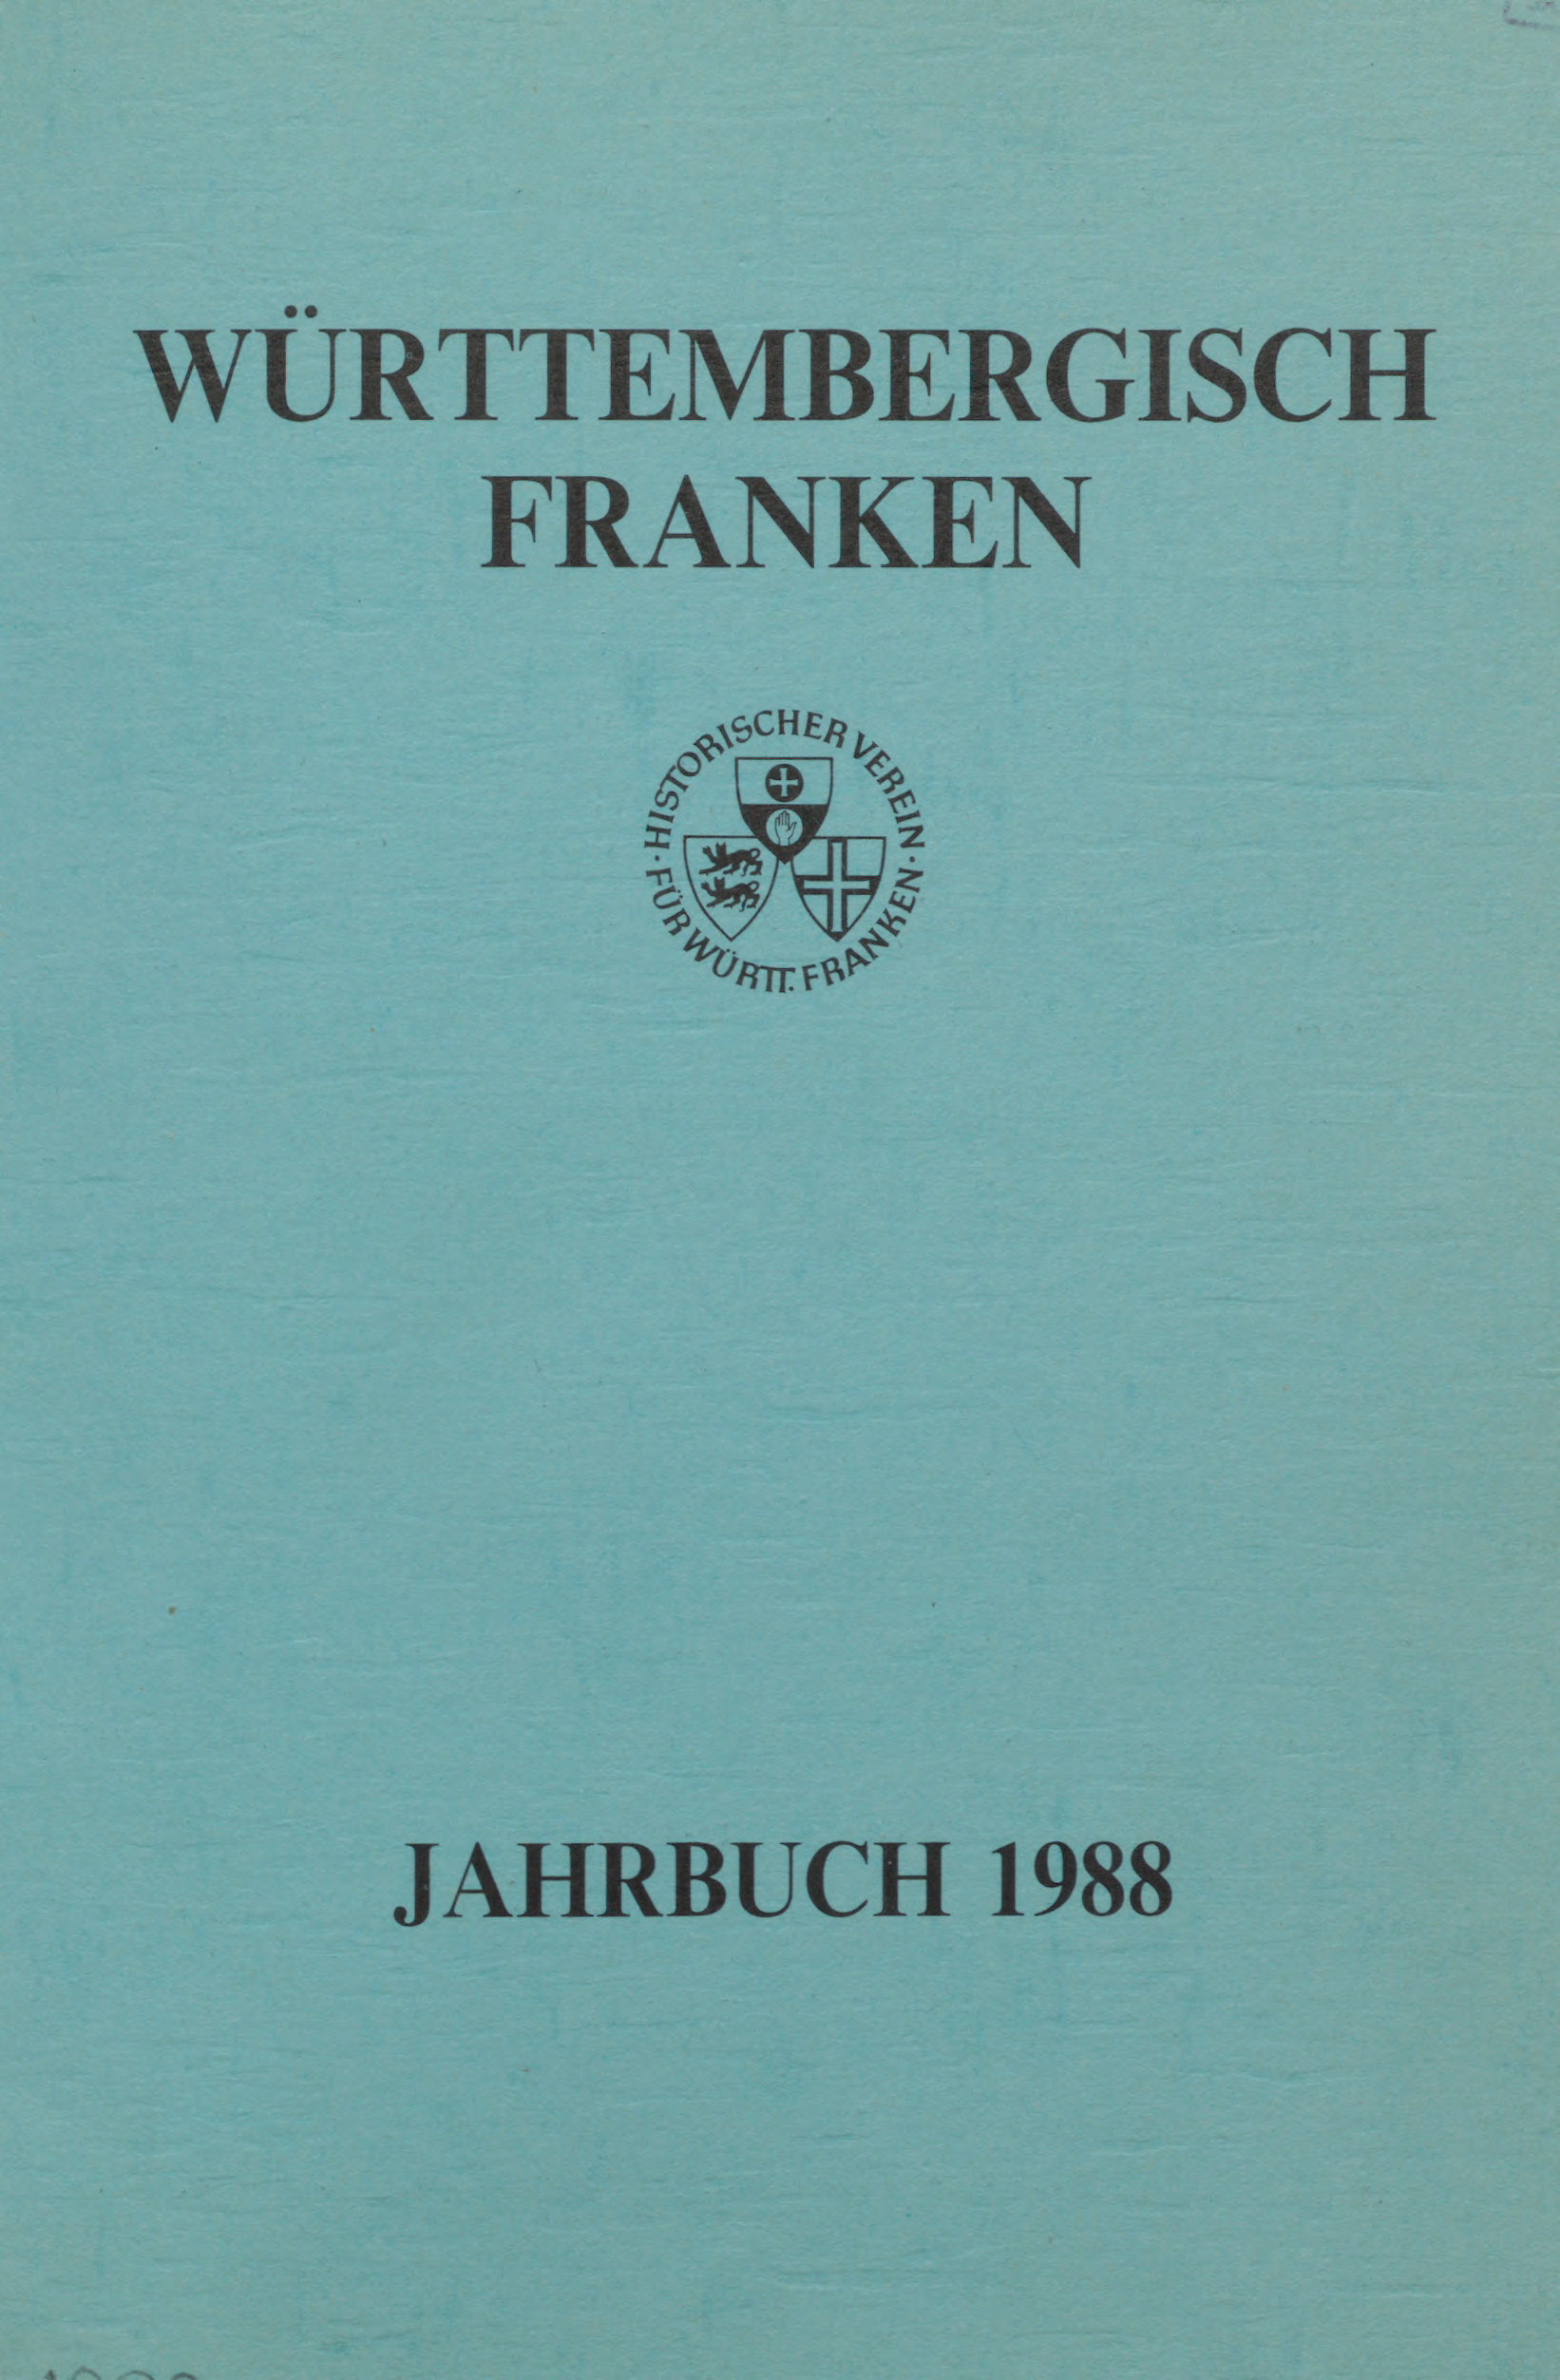                     Ansehen Bd. 72 (1988): Württembergisch Franken
                